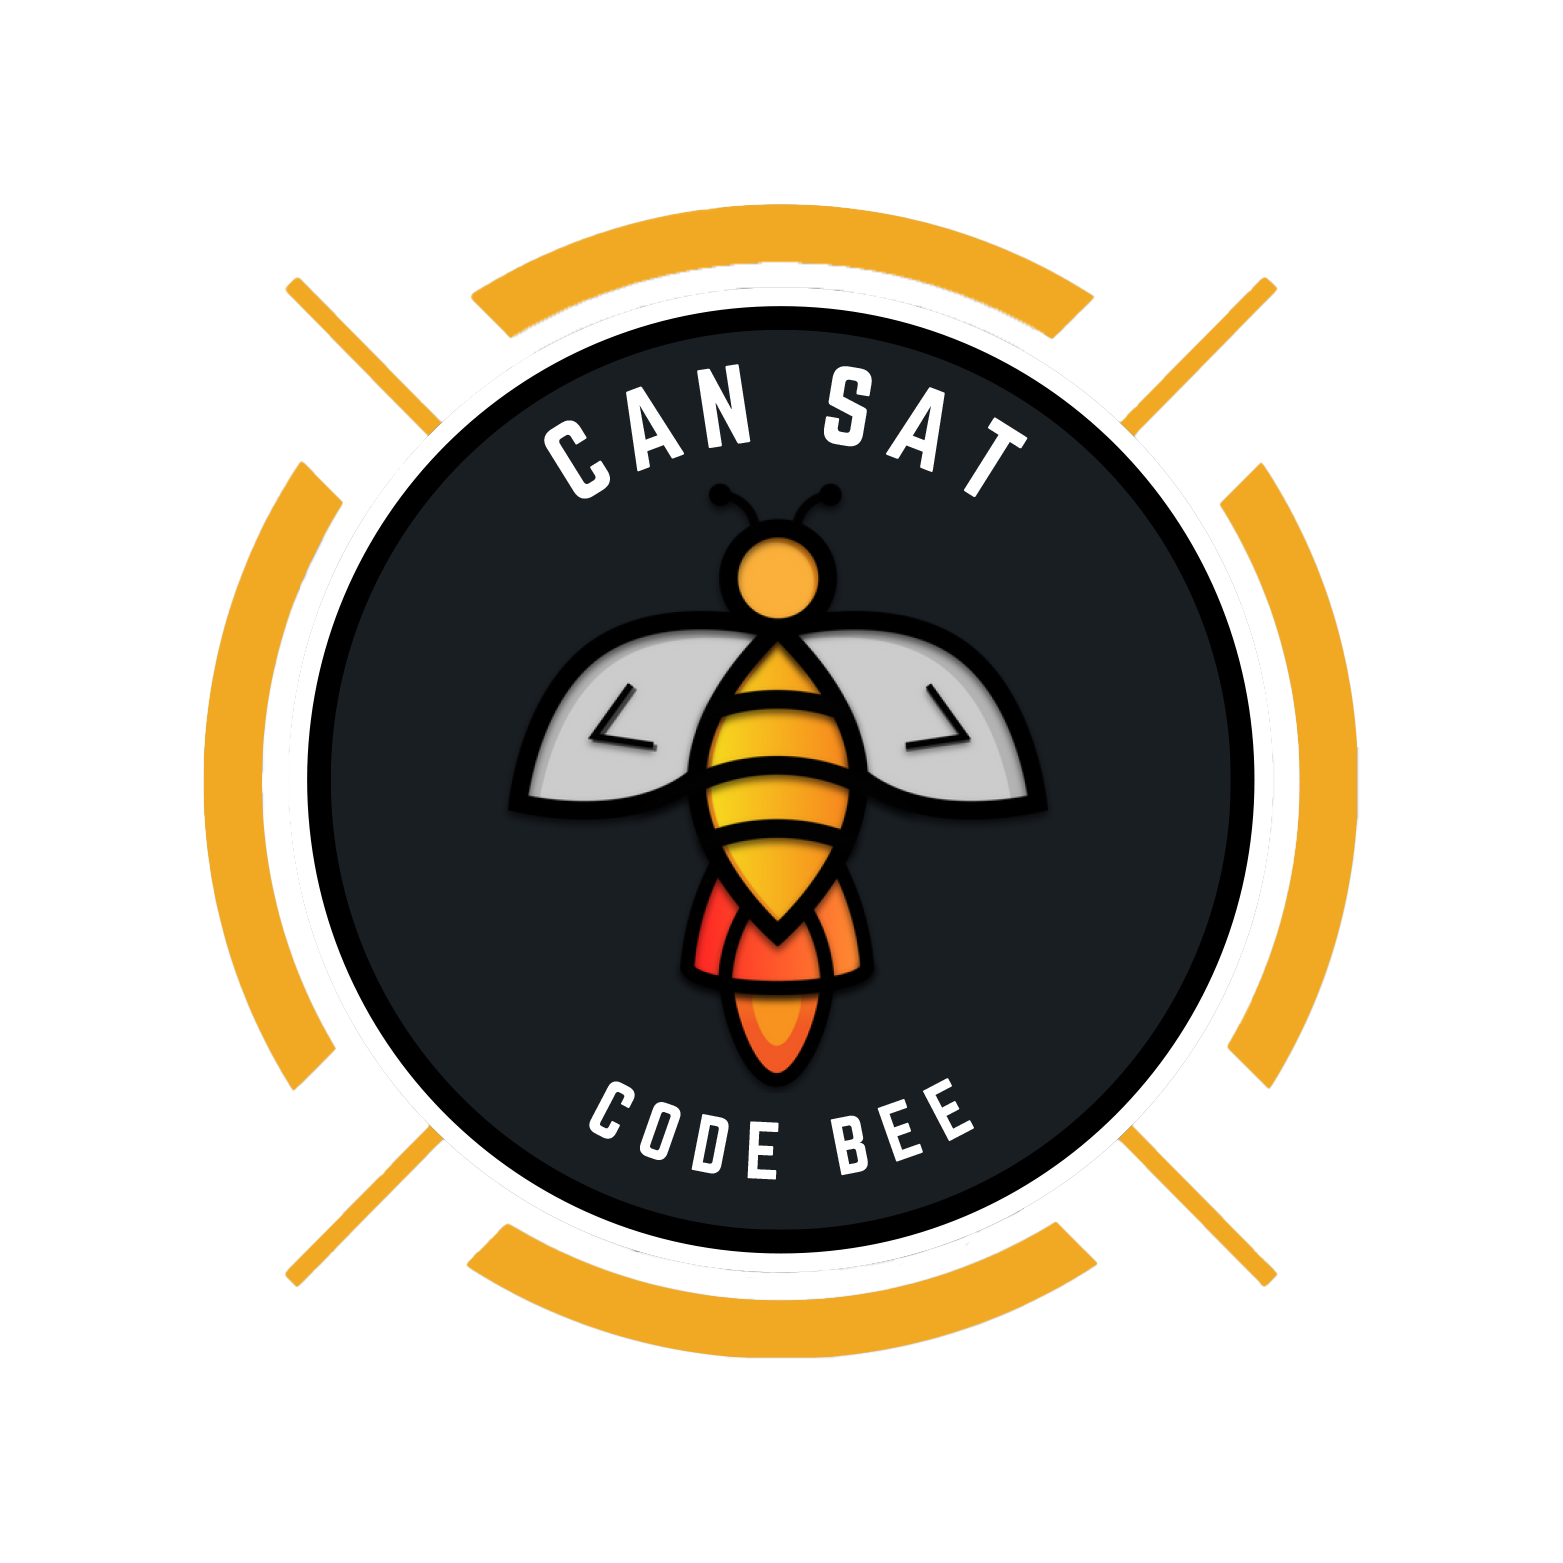 Code Bee